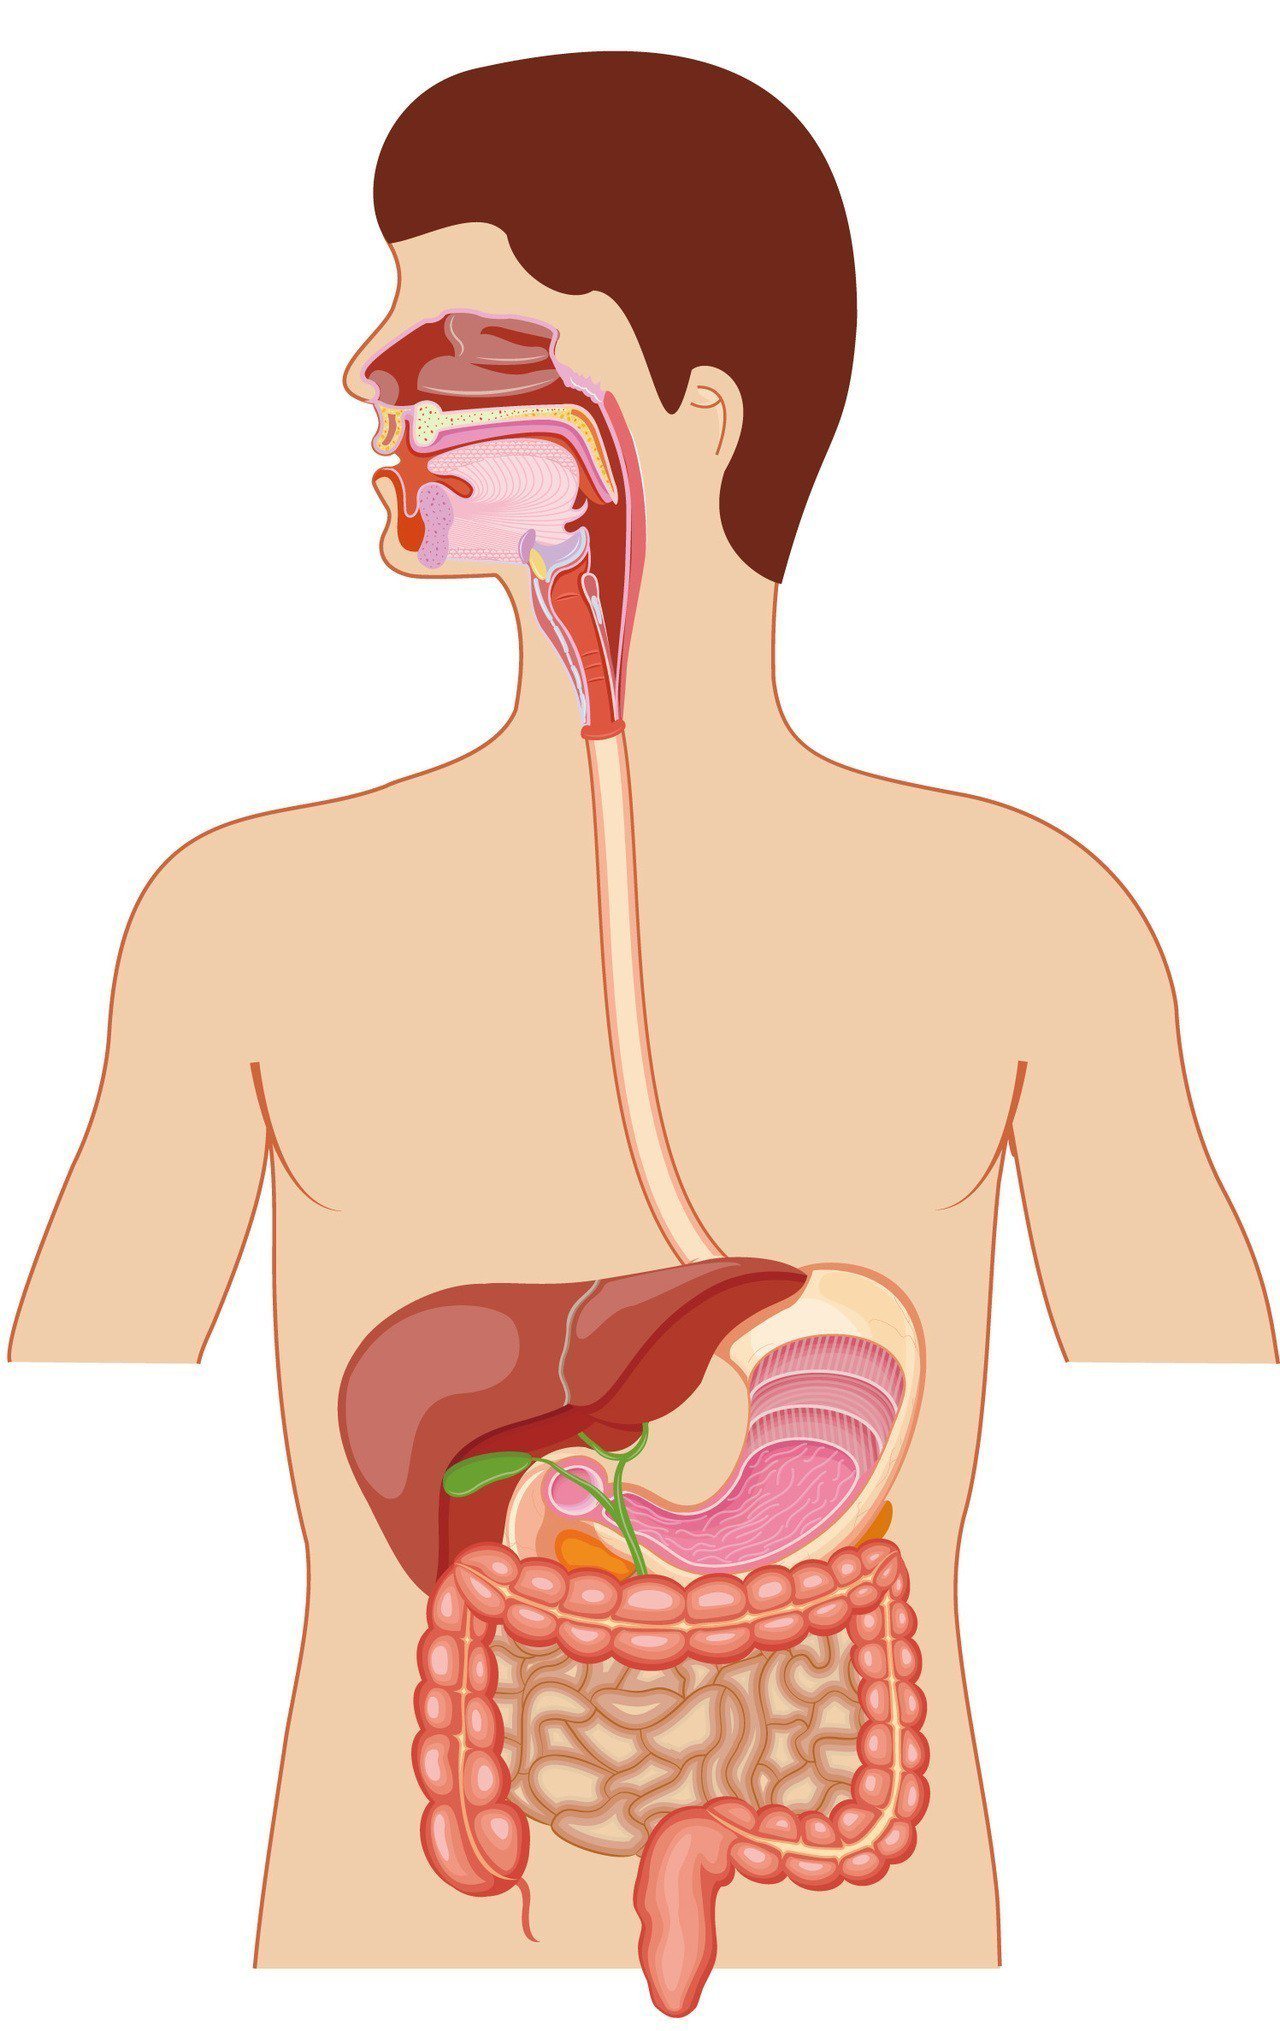 食道由口腔底部到胃部大約40公分，最常見罹癌位置是中段食道。